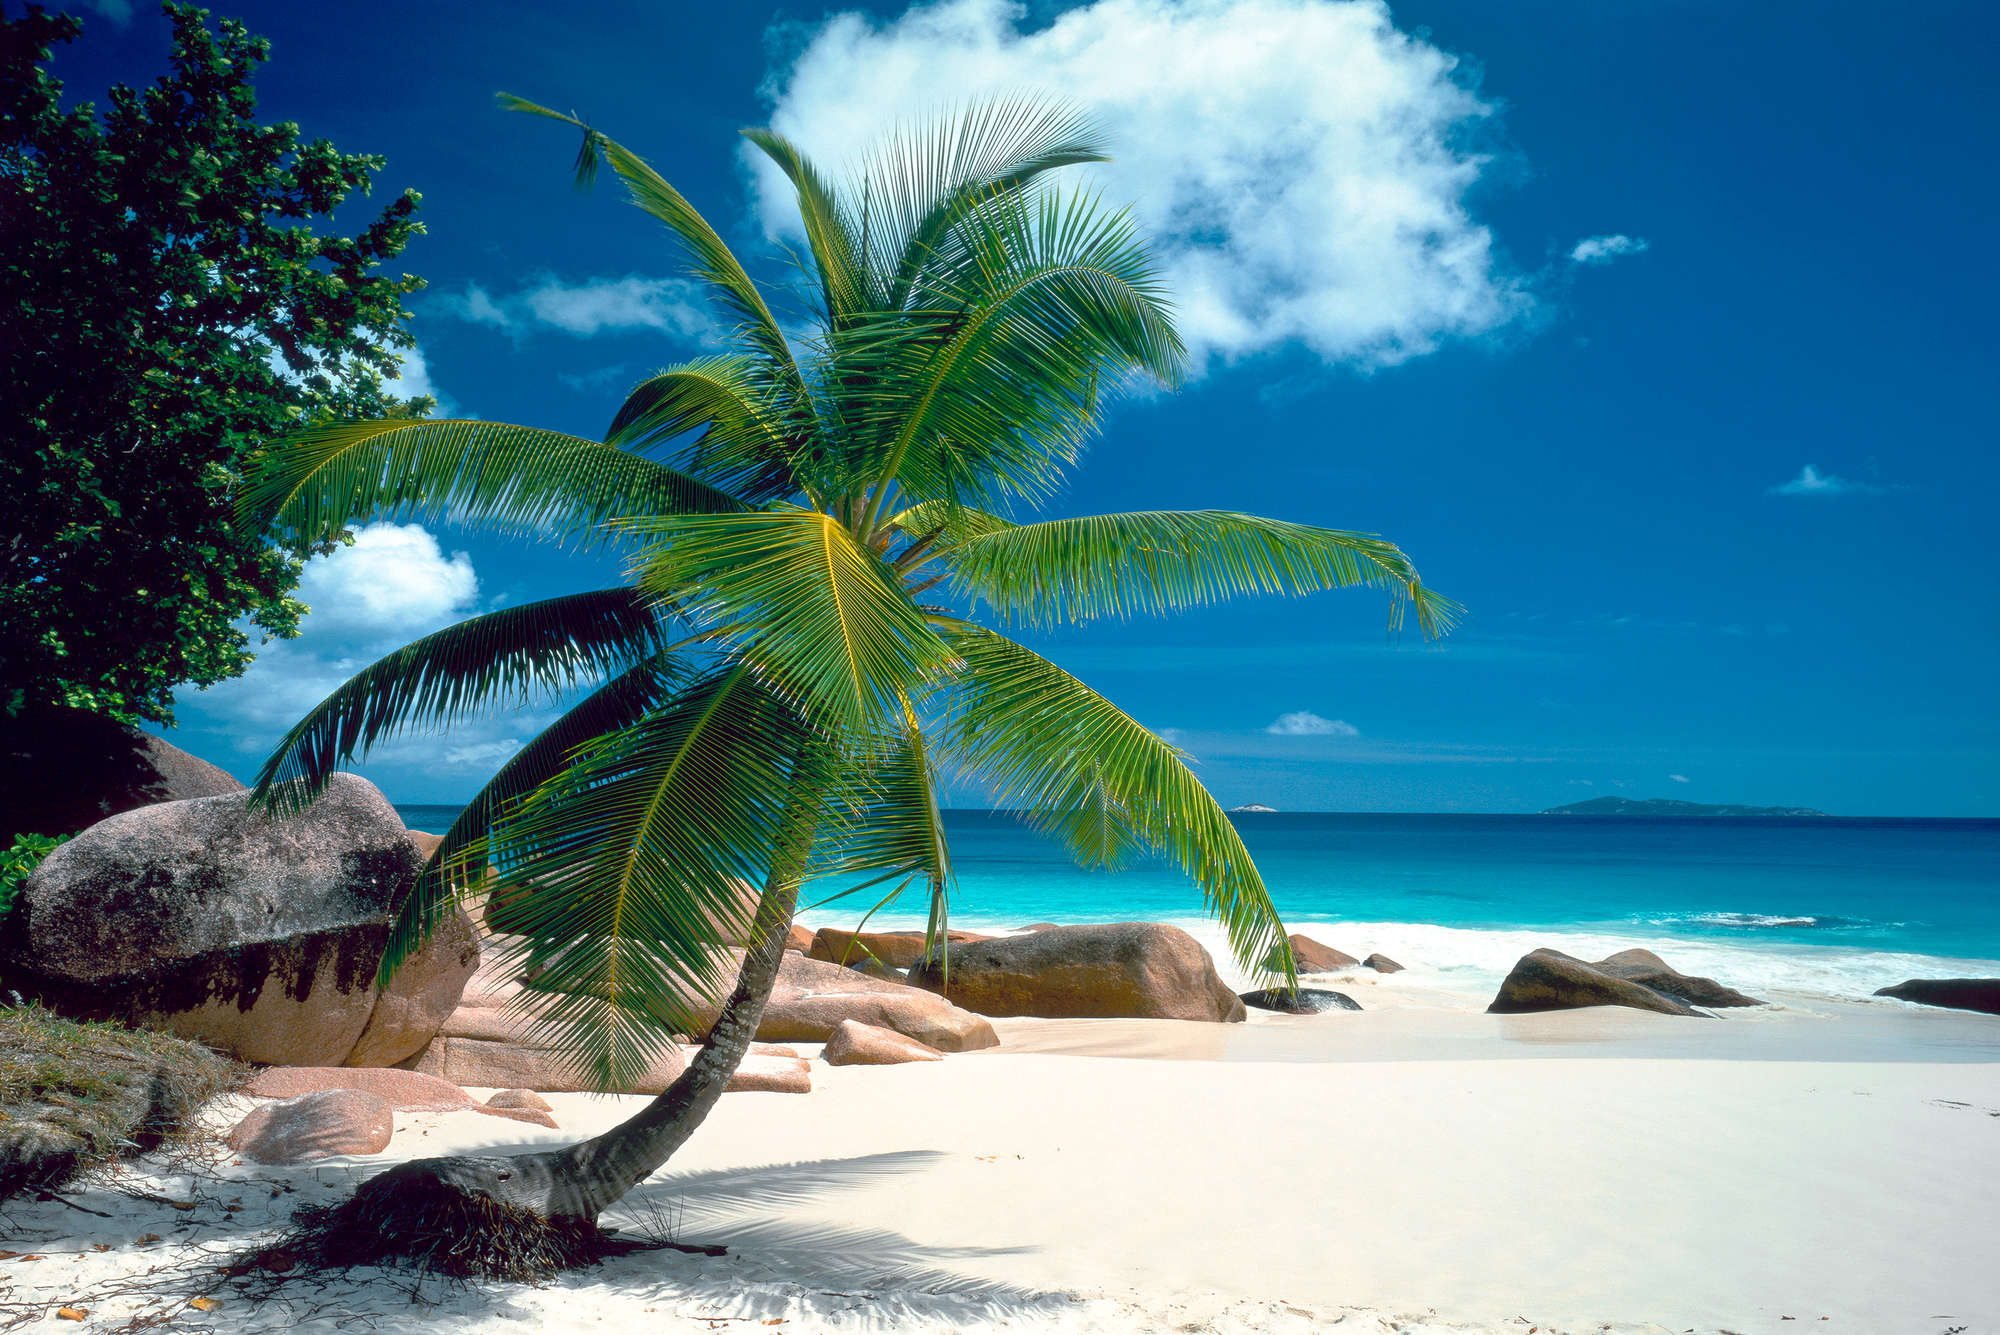             Strand Fototapete Palme mit blauem Meer auf Strukturvlies
        